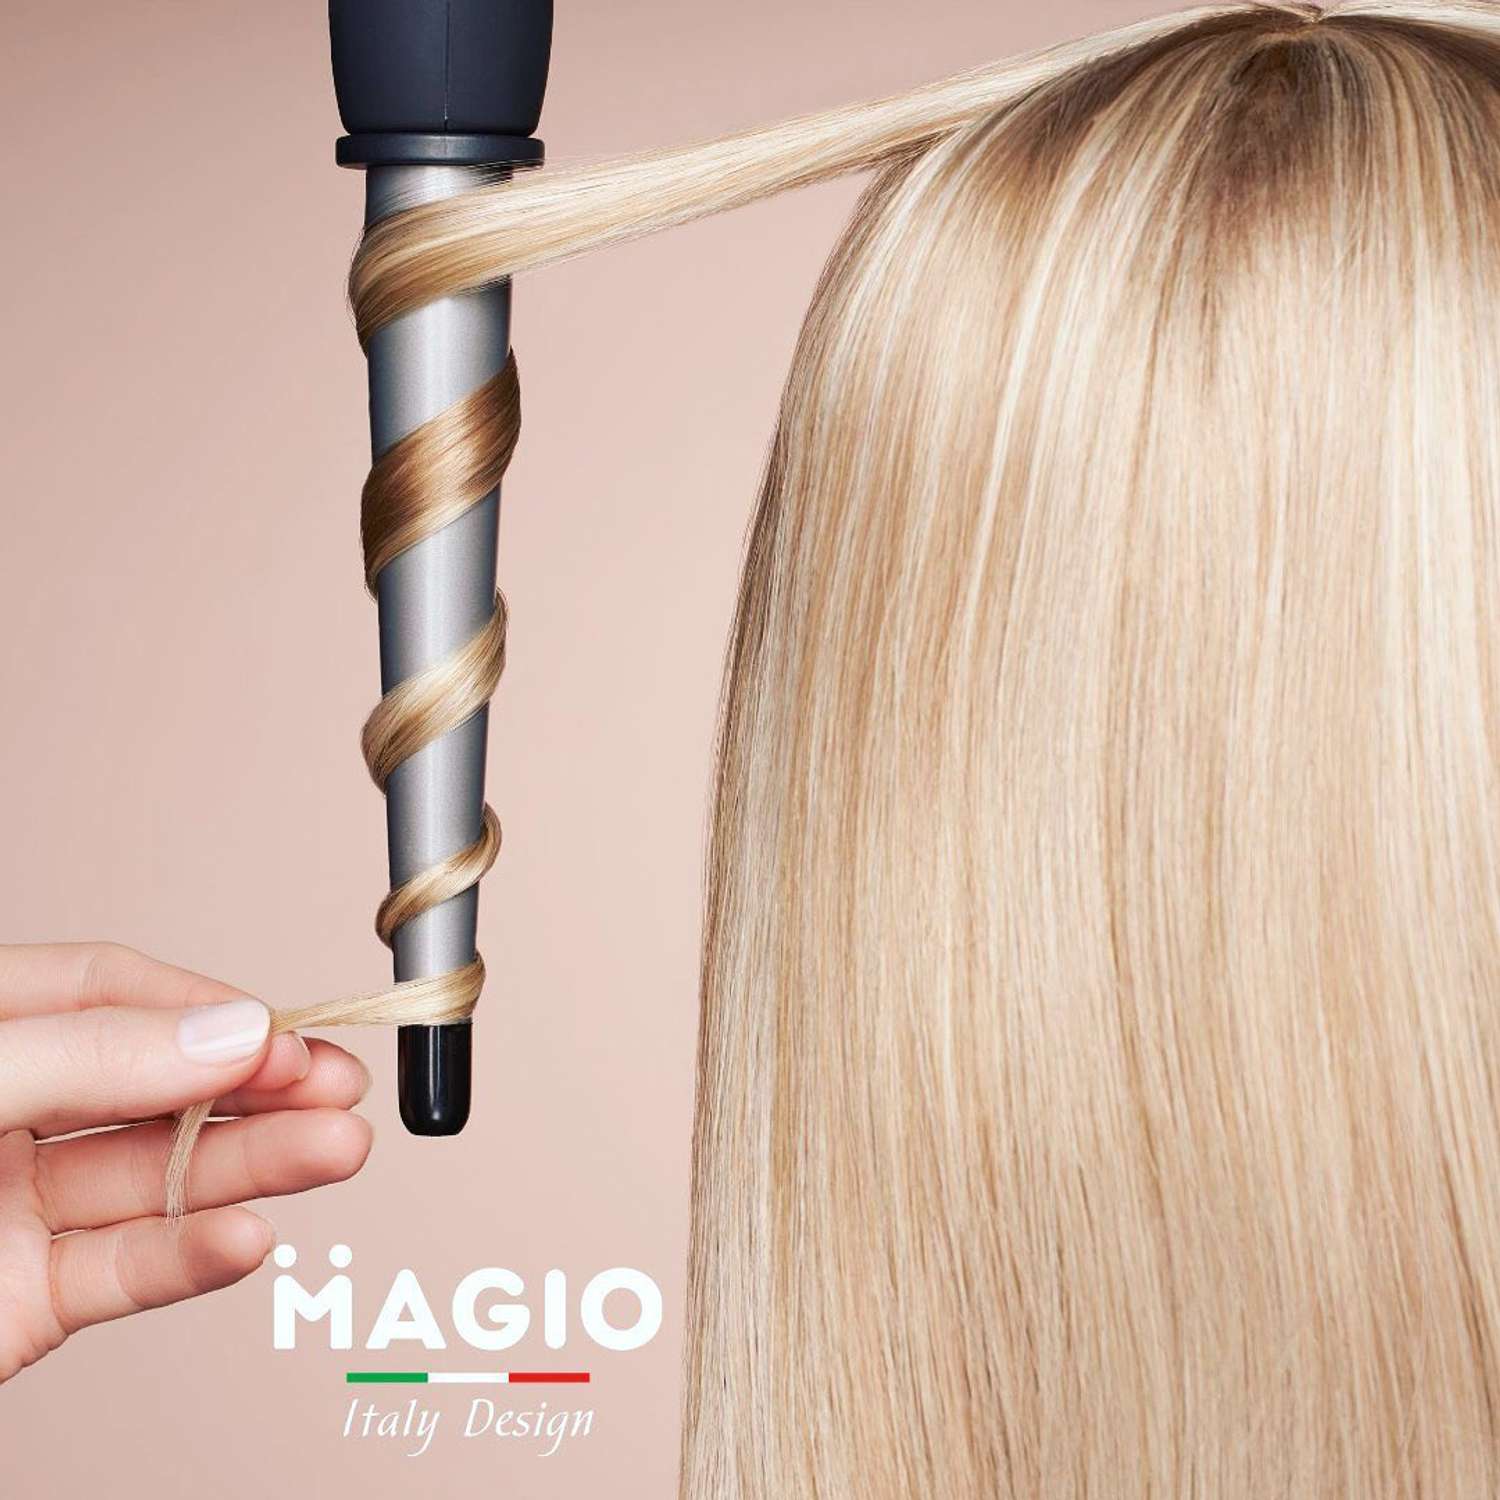 Щипцы для завивки волос Magio МG-703 с двухслойным керамическим корпусом - фото 2